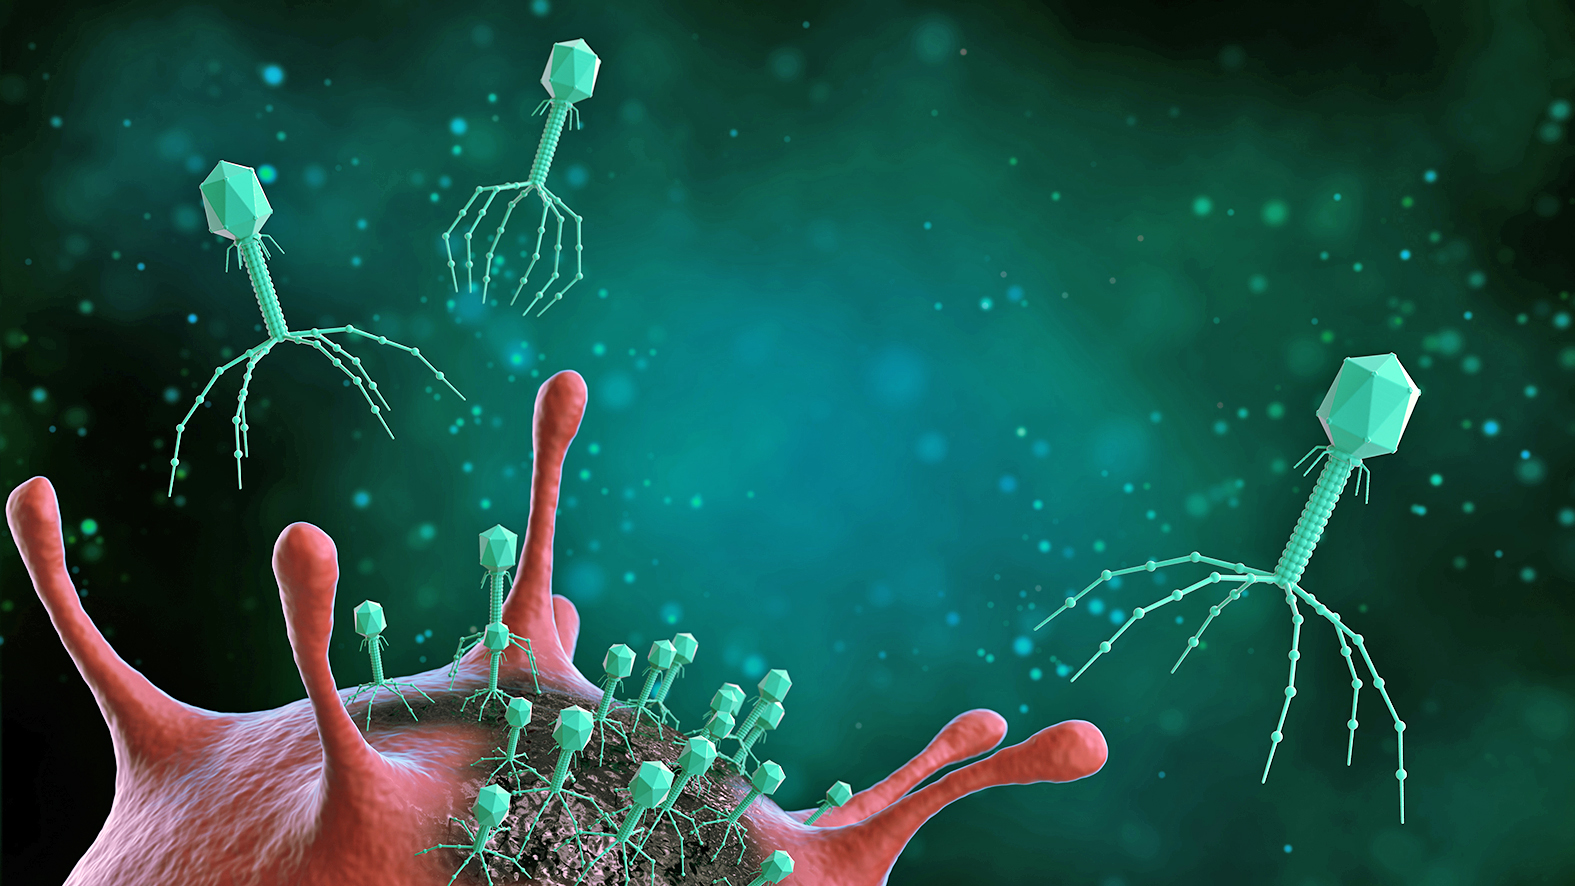 Ilustracja przedstawiająca bakteriofagi atakujące bakterie, choroby zakaźne